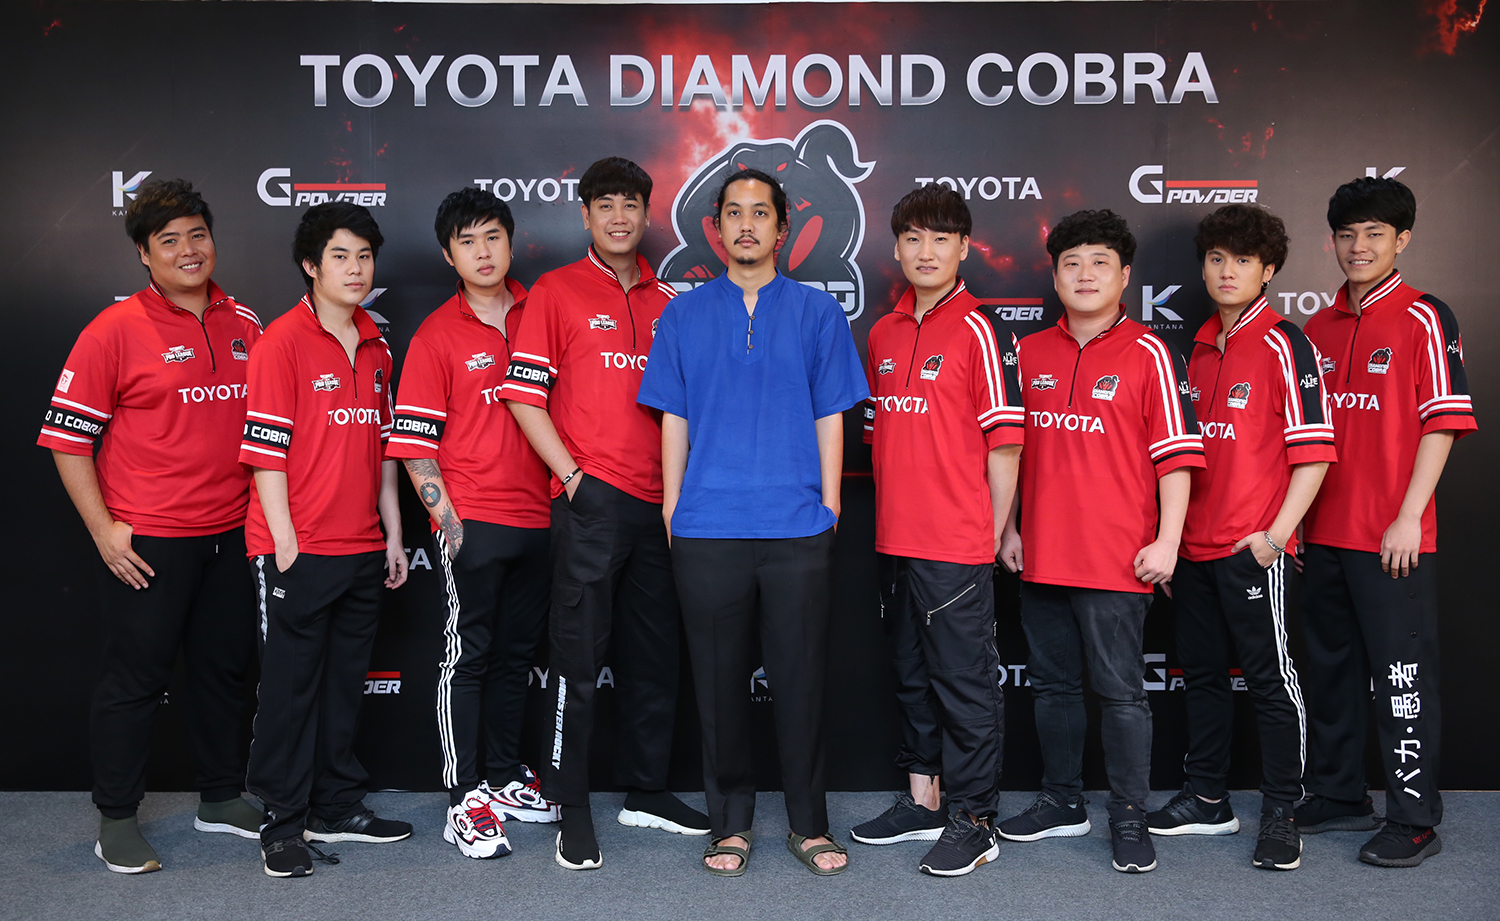 ทีม Toyota Diamond Cobra คว้าตัวนักกีฬาเกาหลี เตรียมลุยศึก RoV หวังคว้าแชมป์ระดับโลก!